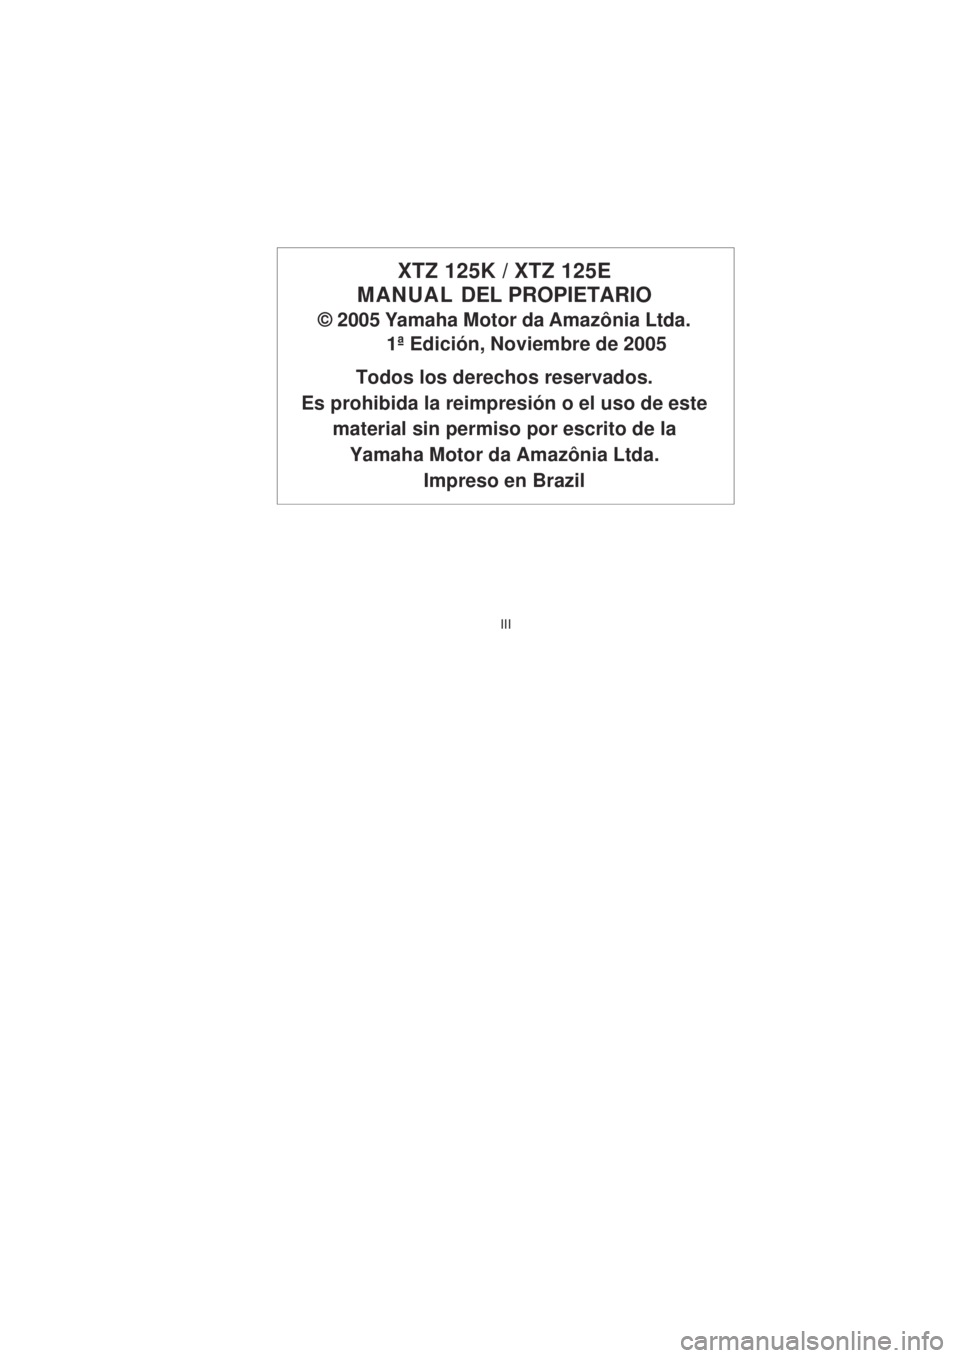 YAMAHA XTZ125 2008  Manuale de Empleo (in Spanish) III
III
XTZ 125K / XTZ 125E
MANUAL  DEL PROPIETARIO
© 2005 Yamaha Motor da Amazônia Ltda.
1ª Edición, Noviembre de 2005
Todos los derechos reservados.
Es prohibida la reimpresión o el uso de este